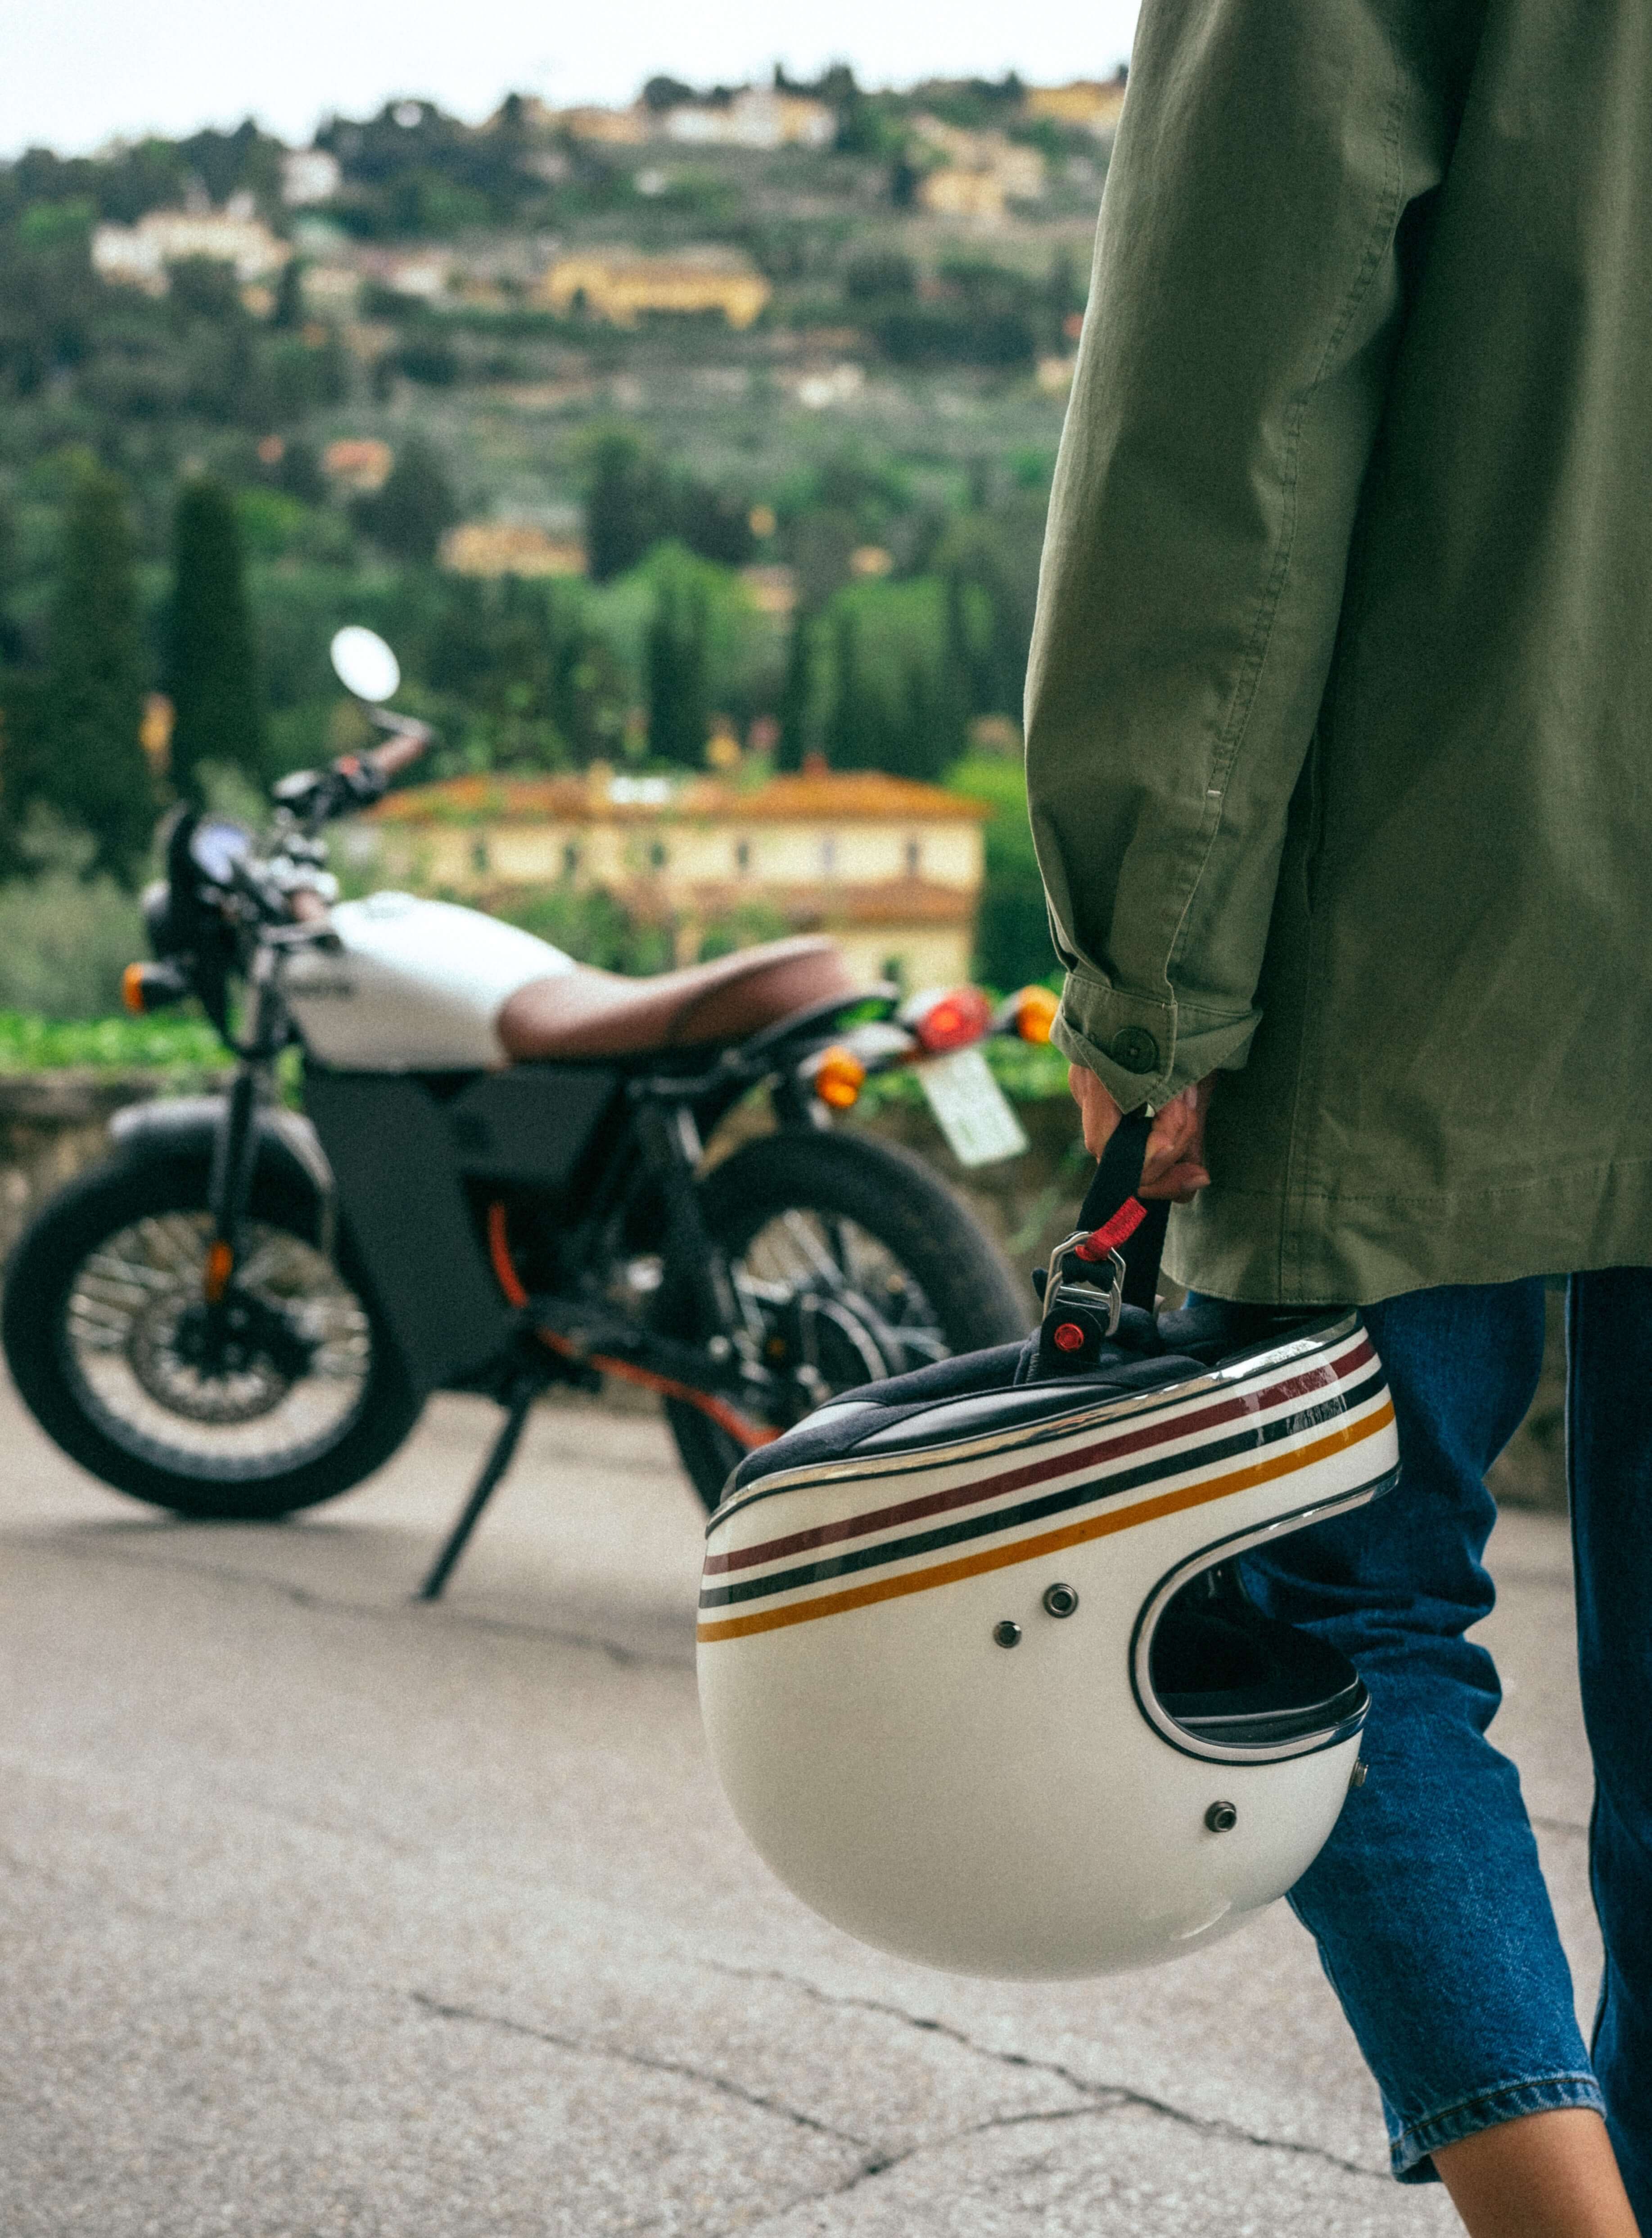 Vintage helmet and motorcycle